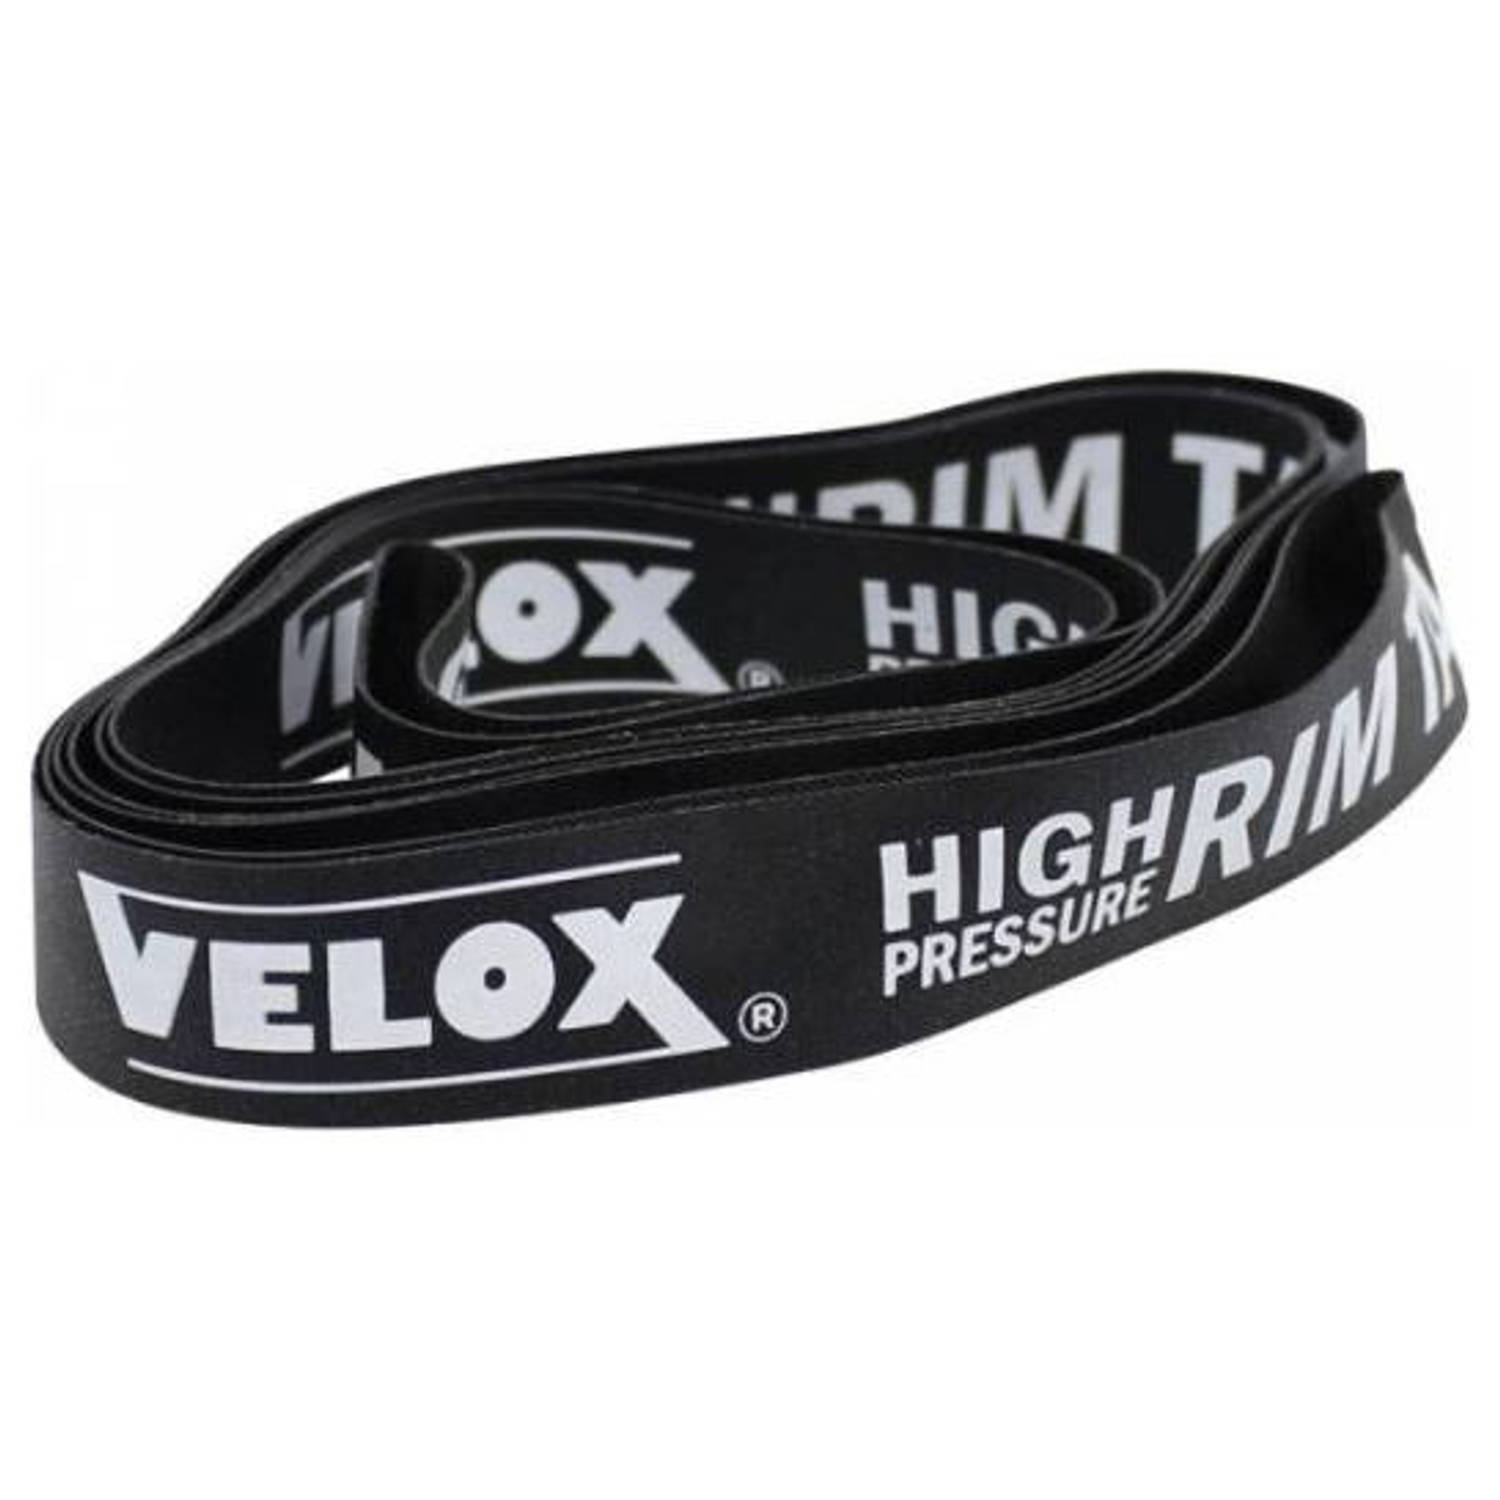 Velox velglint High Pressure VTT 27,5 584 18 mm zwart 20 stuks